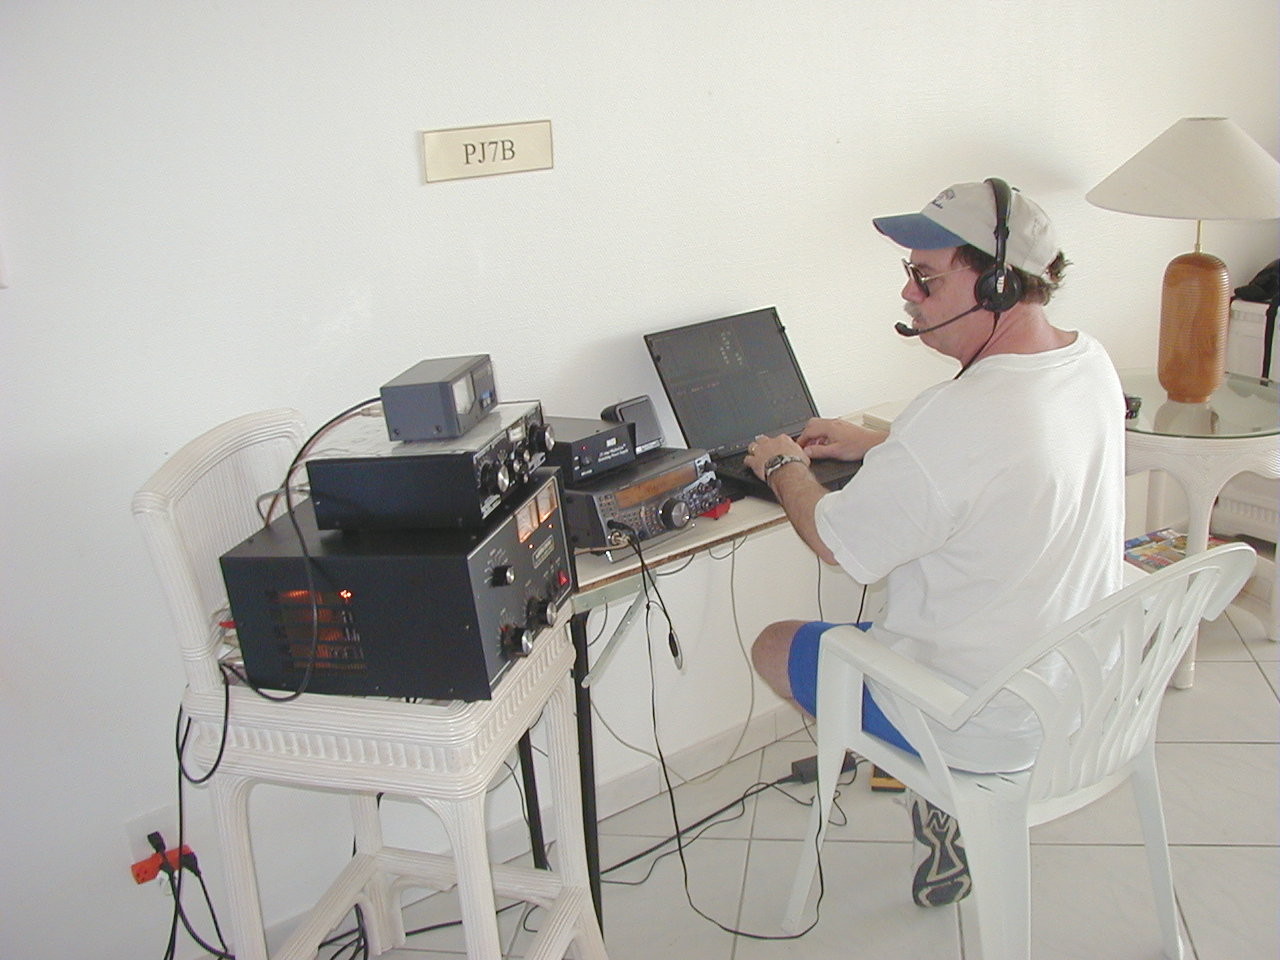 Bob-K8RLM operating as PJ7B
in 2002 ARRL DX SSB Contest